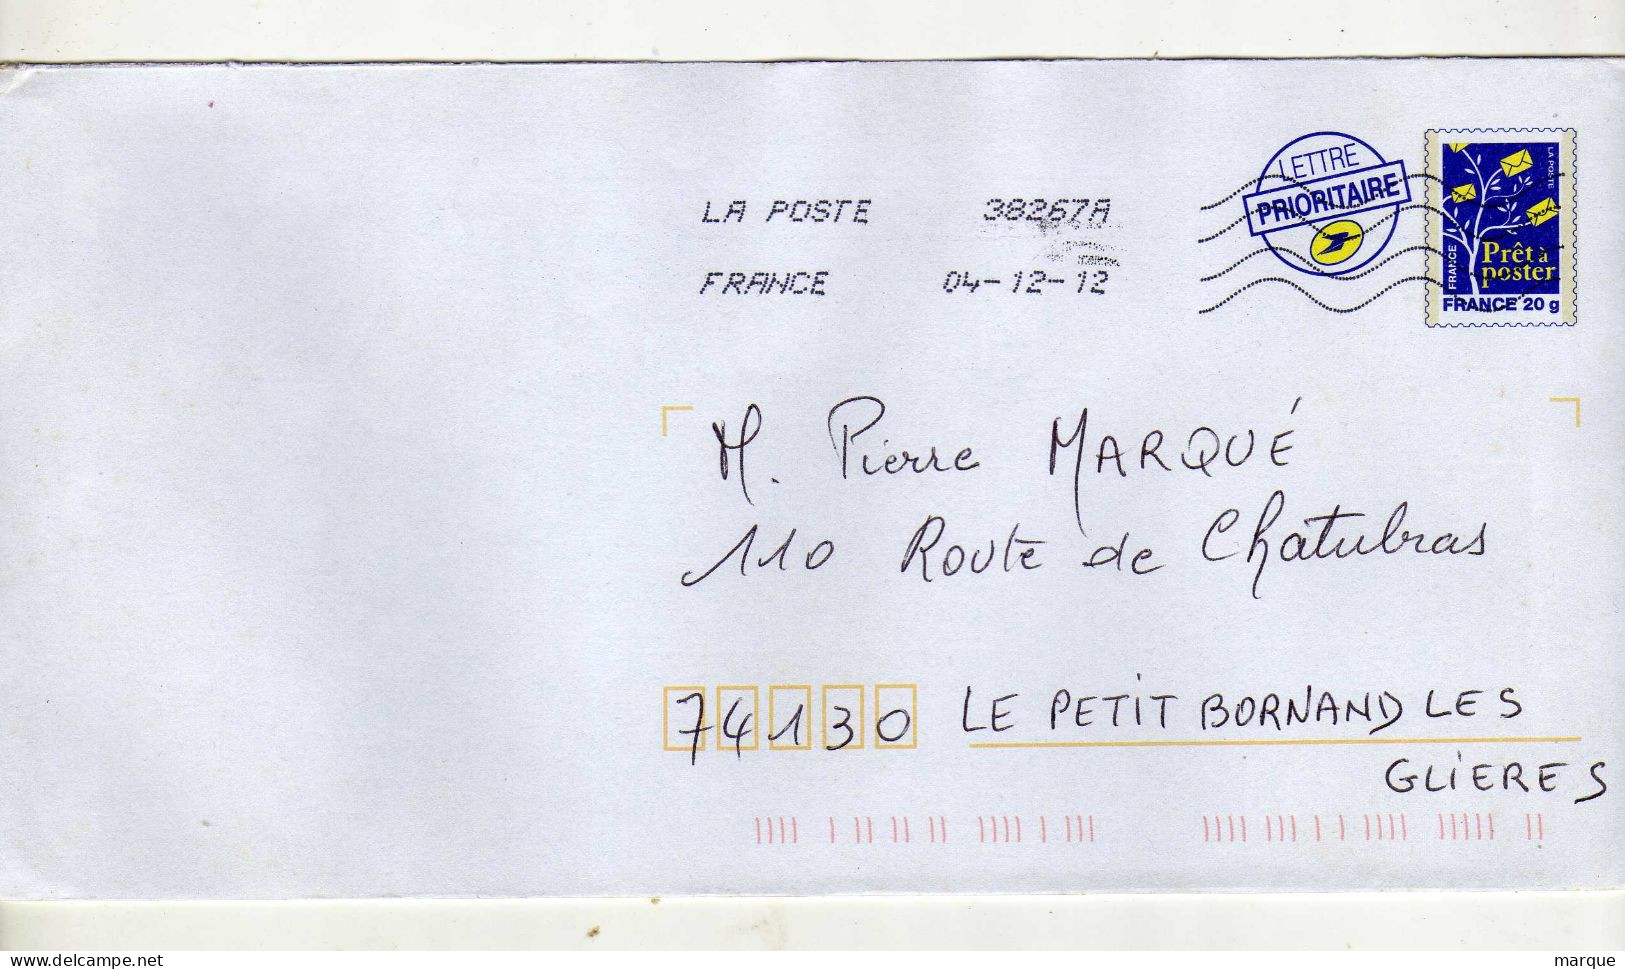 Enveloppe FRANCE Prêt à Poster Lettre Prioritaire 20g Oblitération LA POSTE 38267A 04/12/2012 - Listos Para Enviar: Transplantes/Logotipo Azul